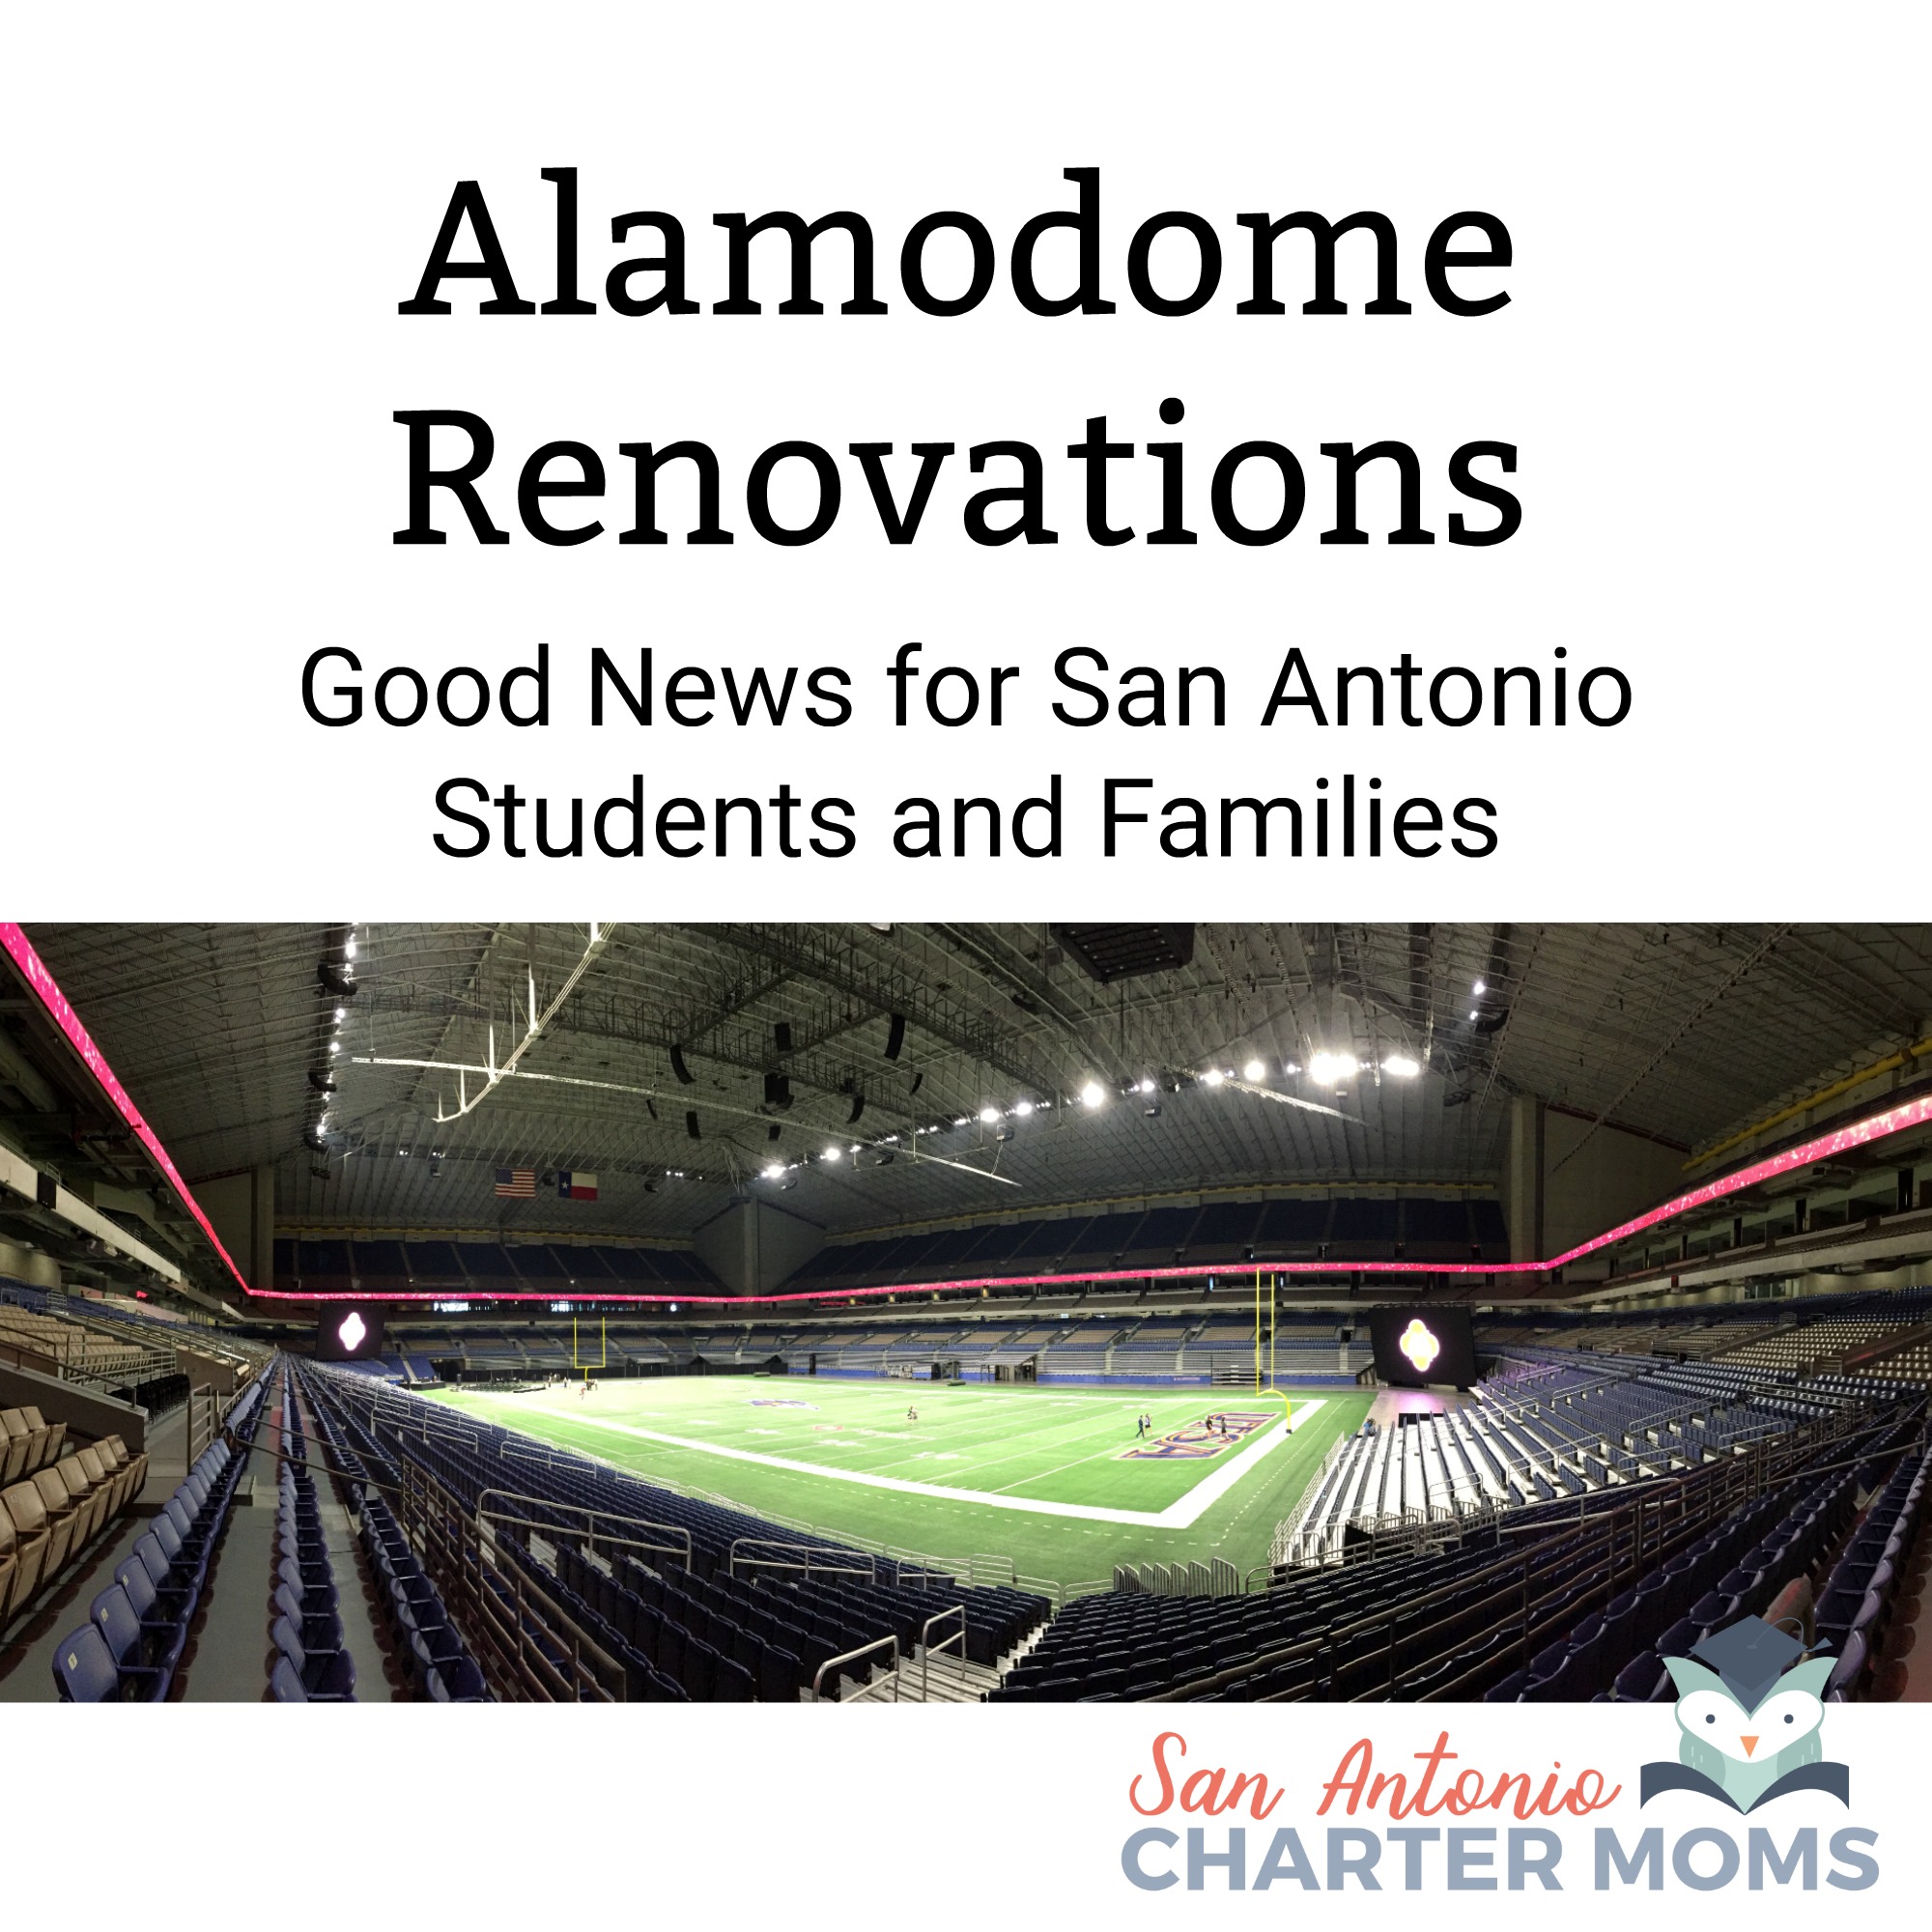 Good News for San Antonio Students and Families | San Antonio Charter Moms